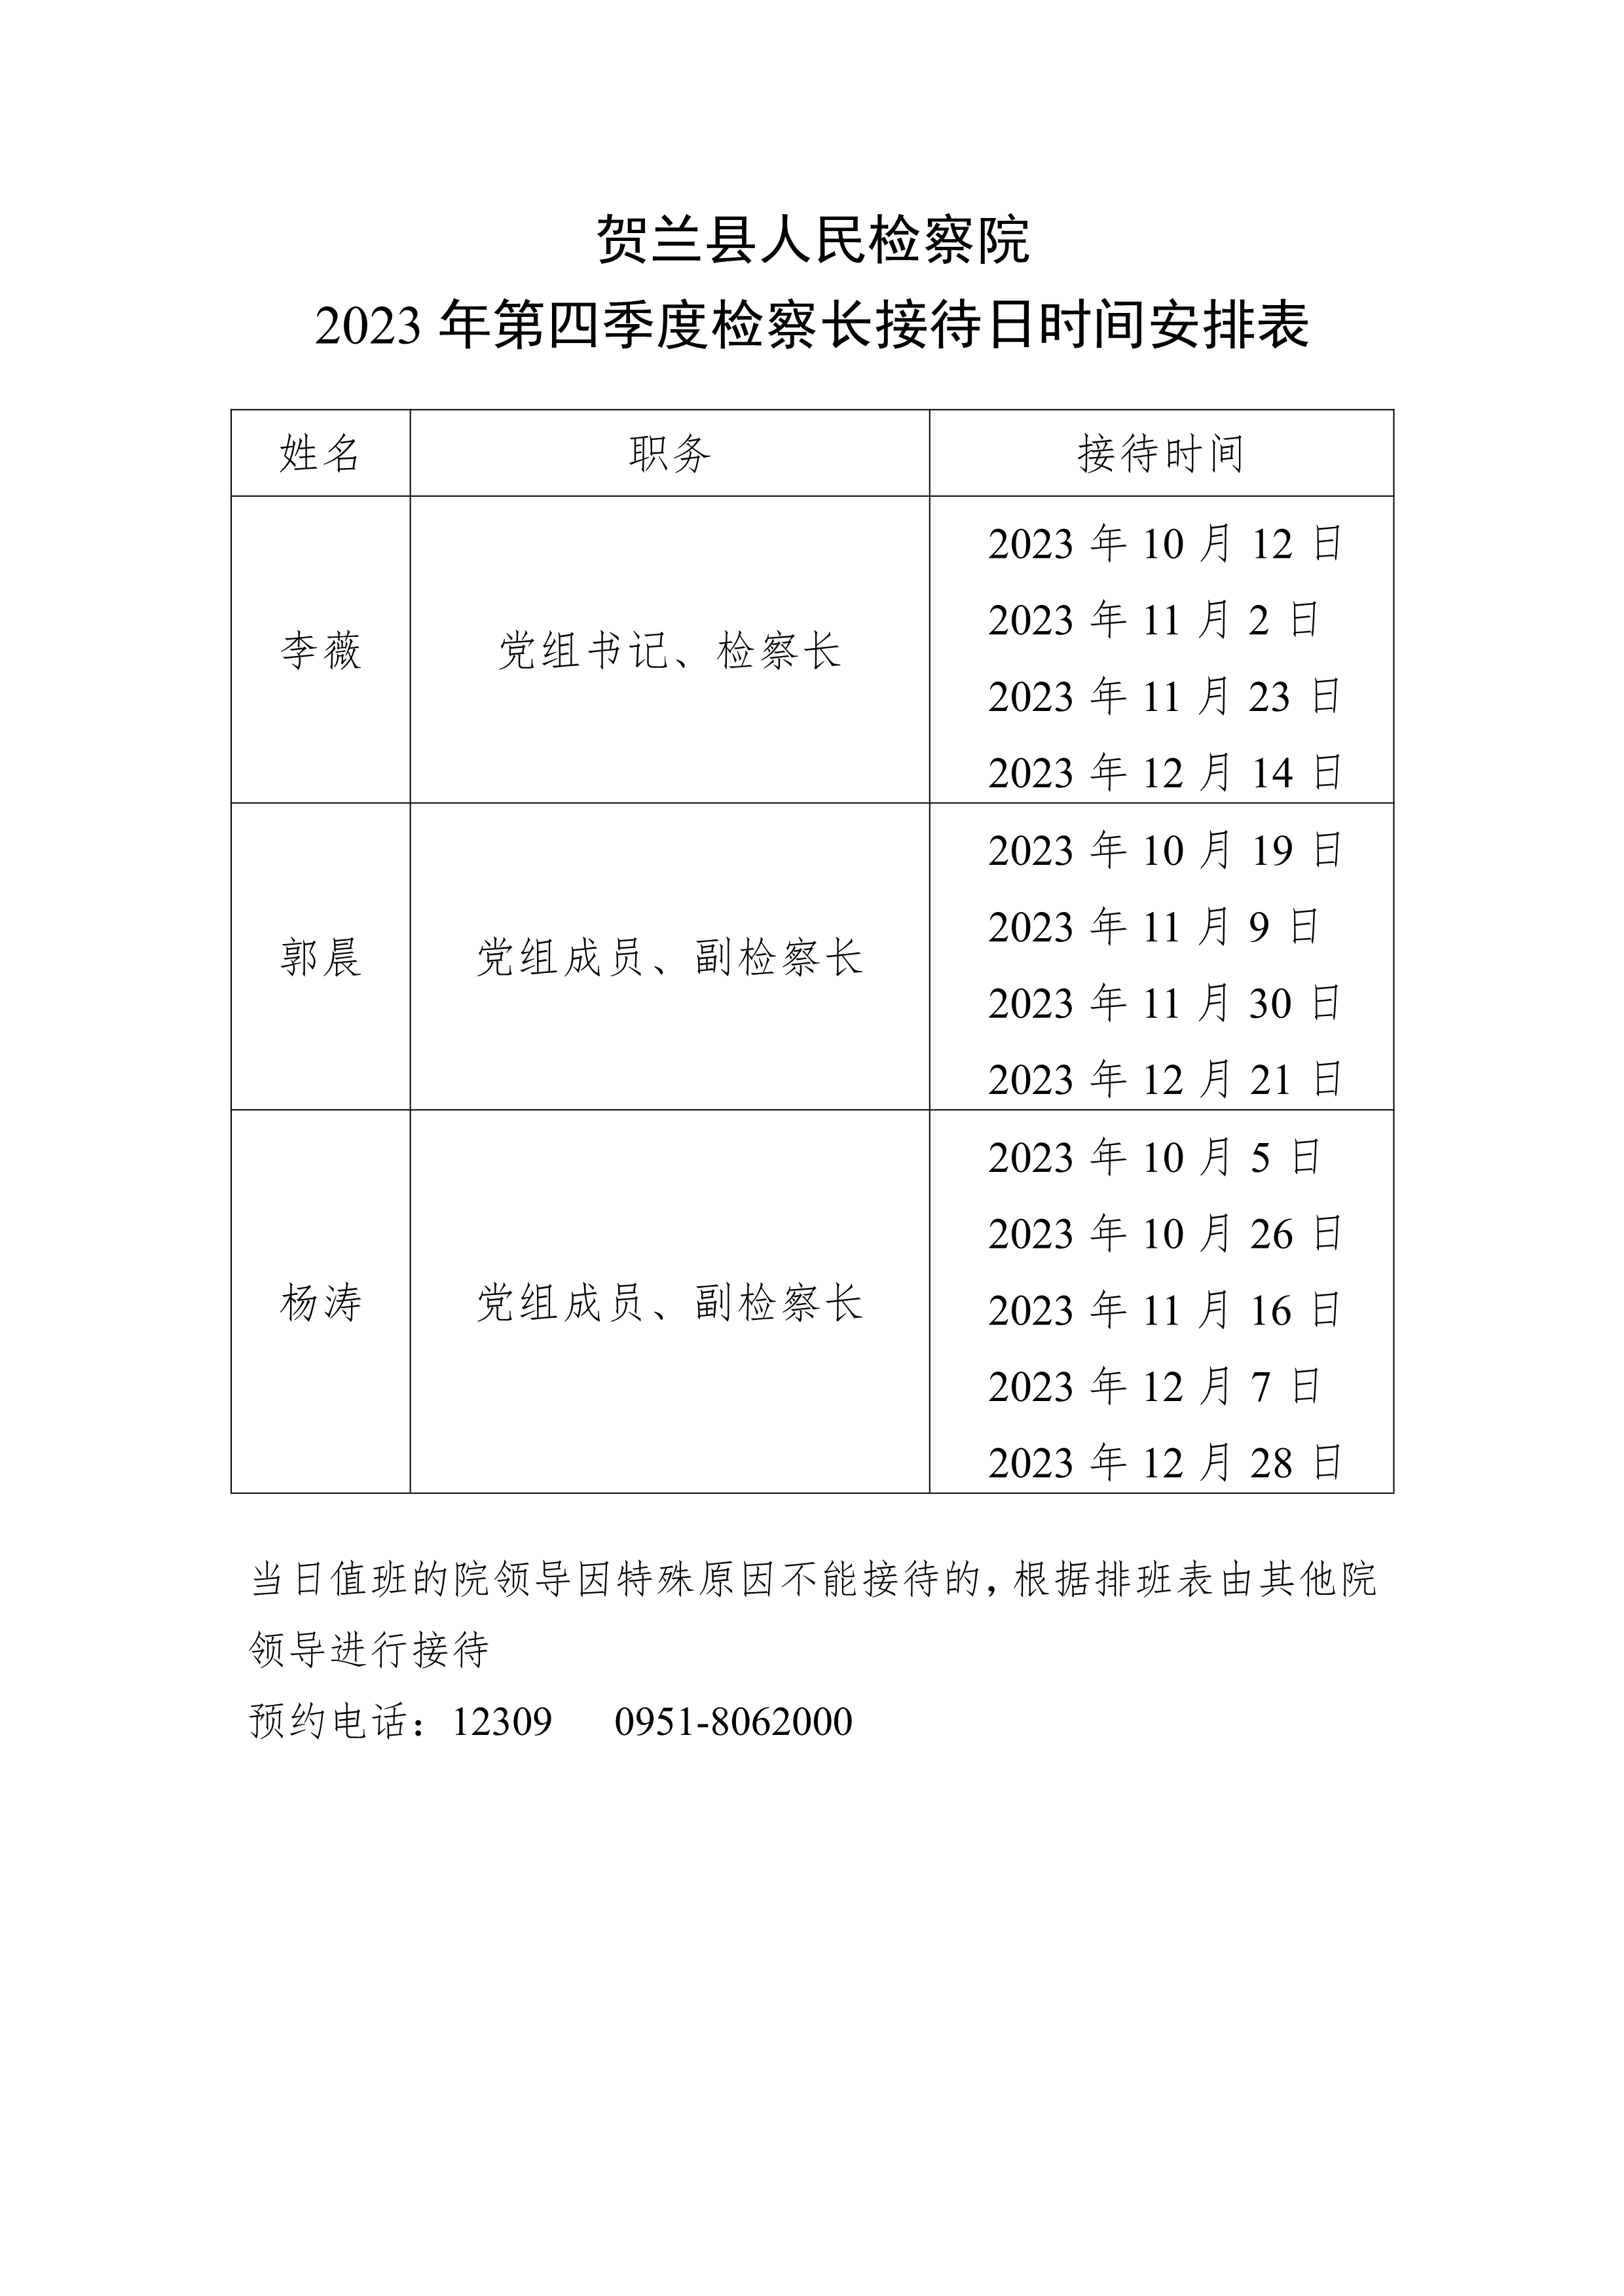 2023年第四季度检察长接待日时间安排表1.jpg